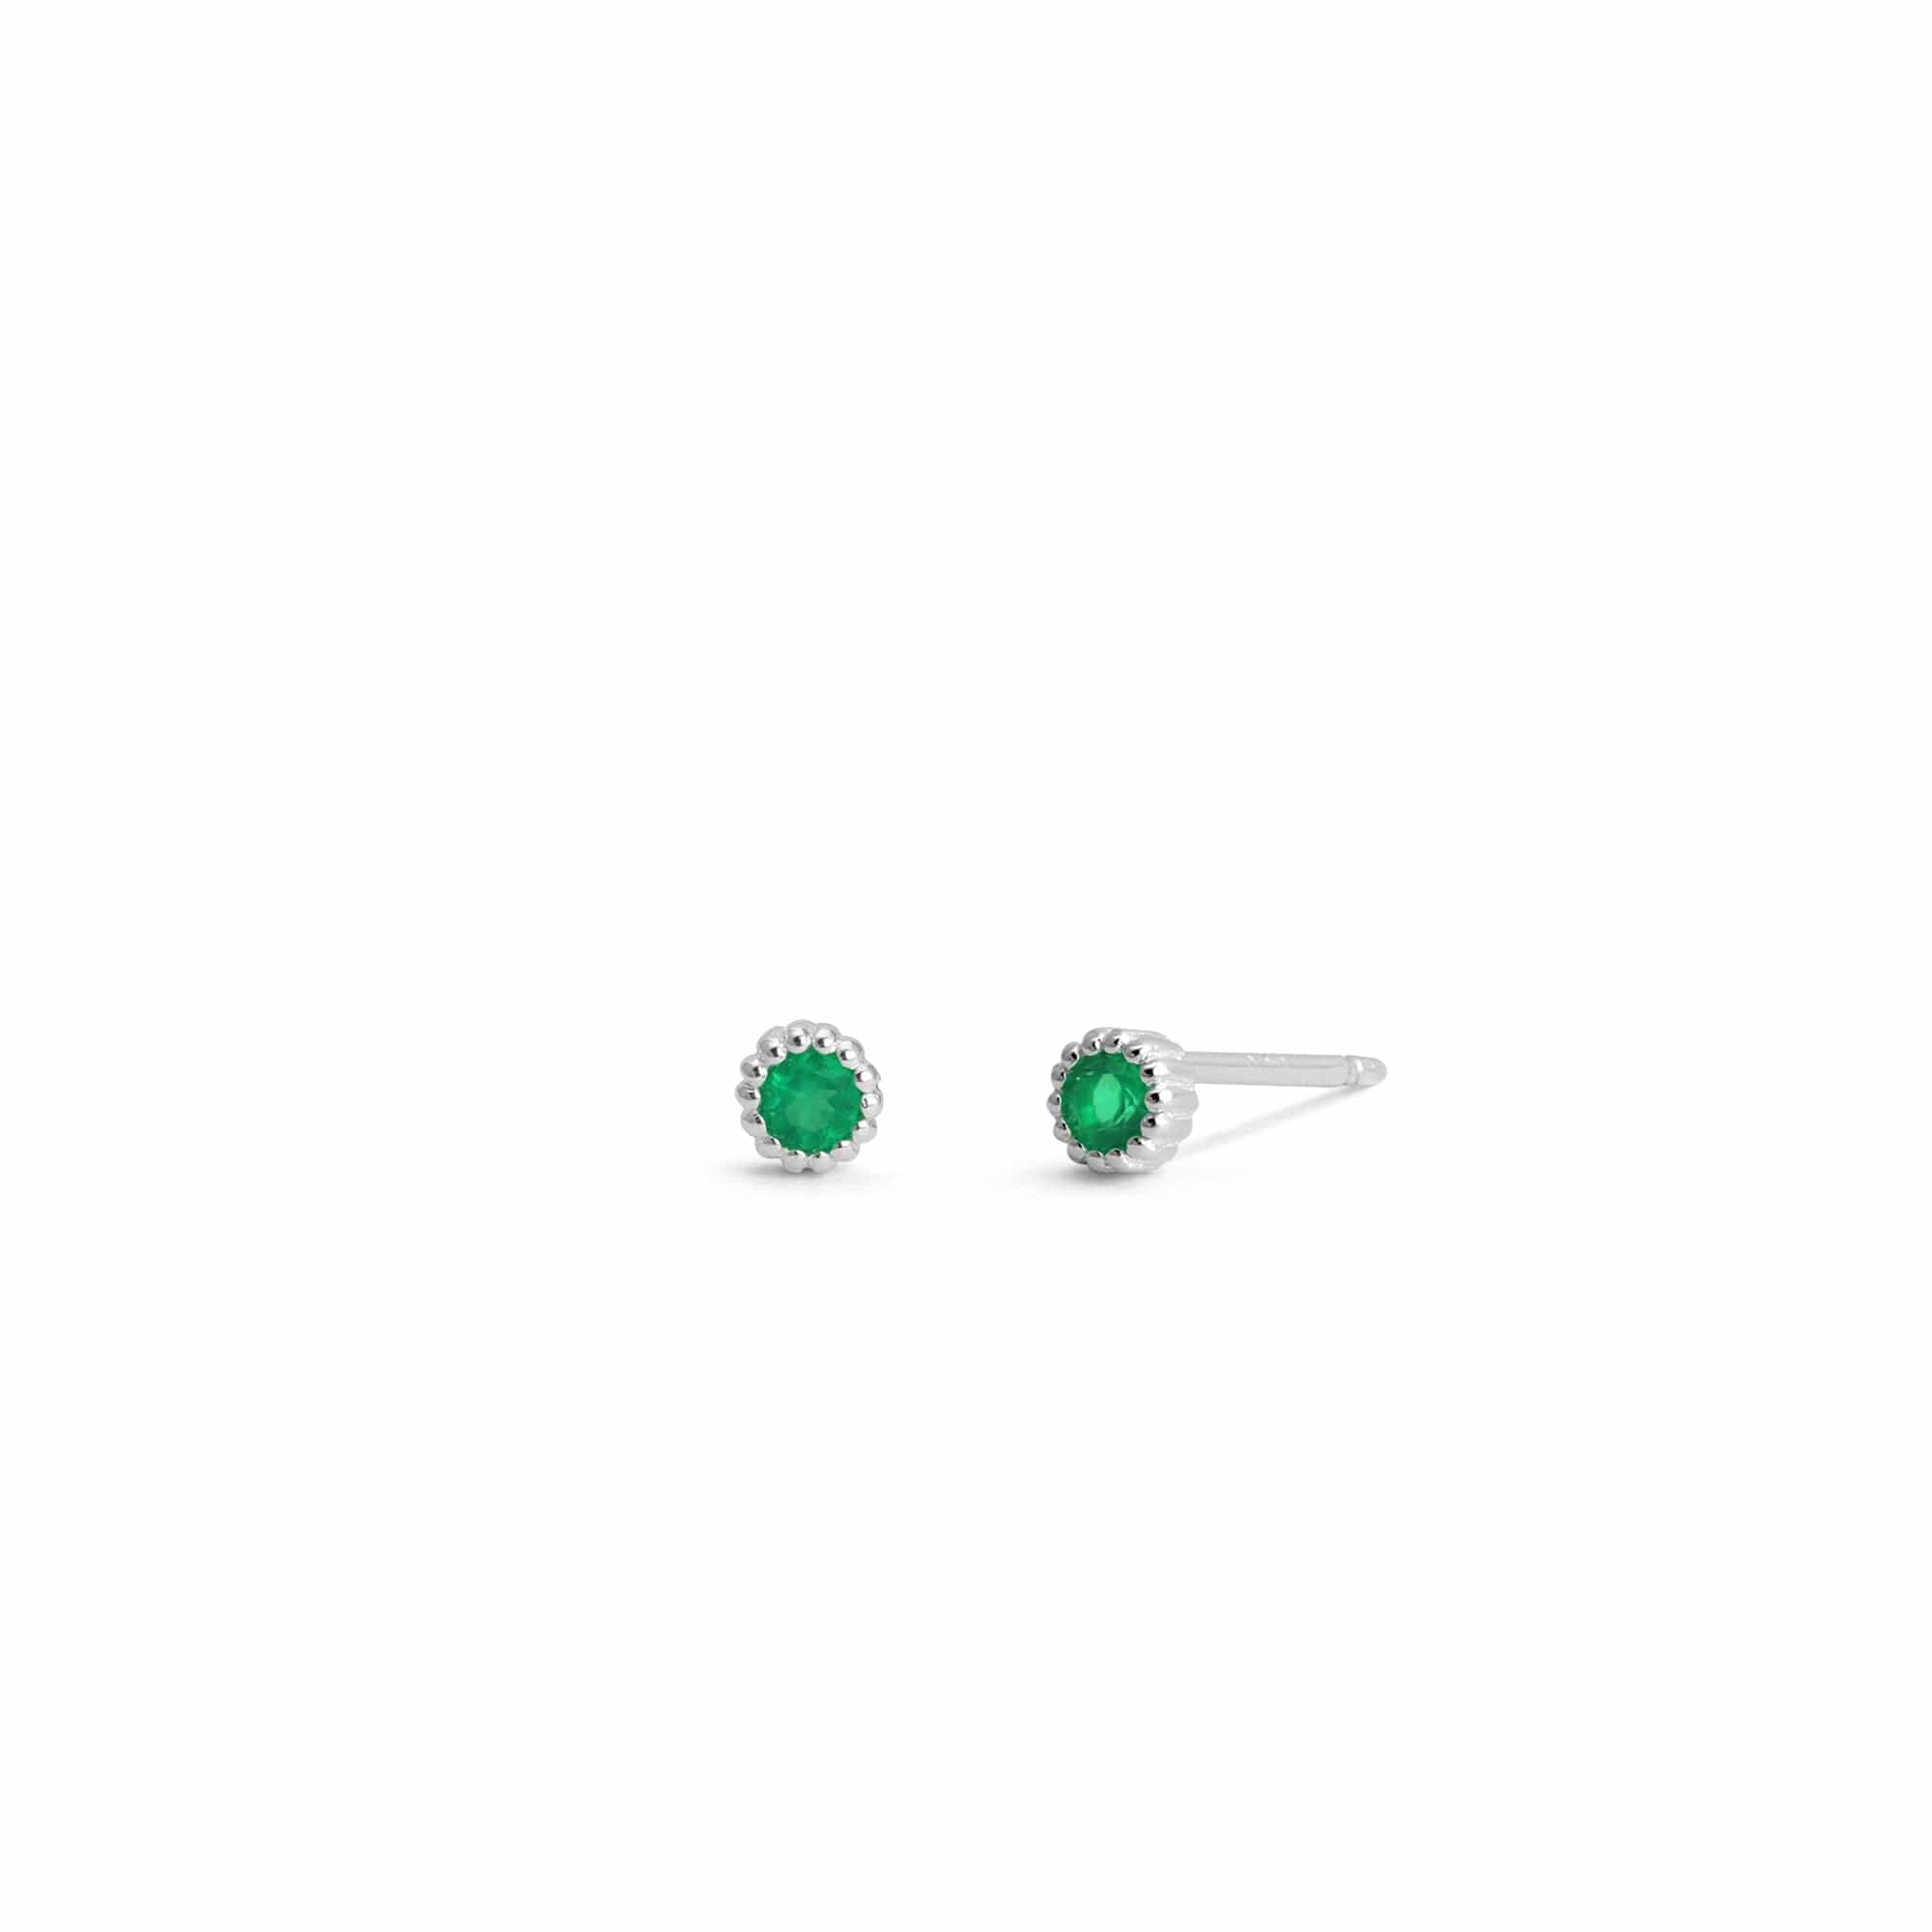 Boma Jewelry Earrings Green Onyx Mini Colored Gemstone Studs